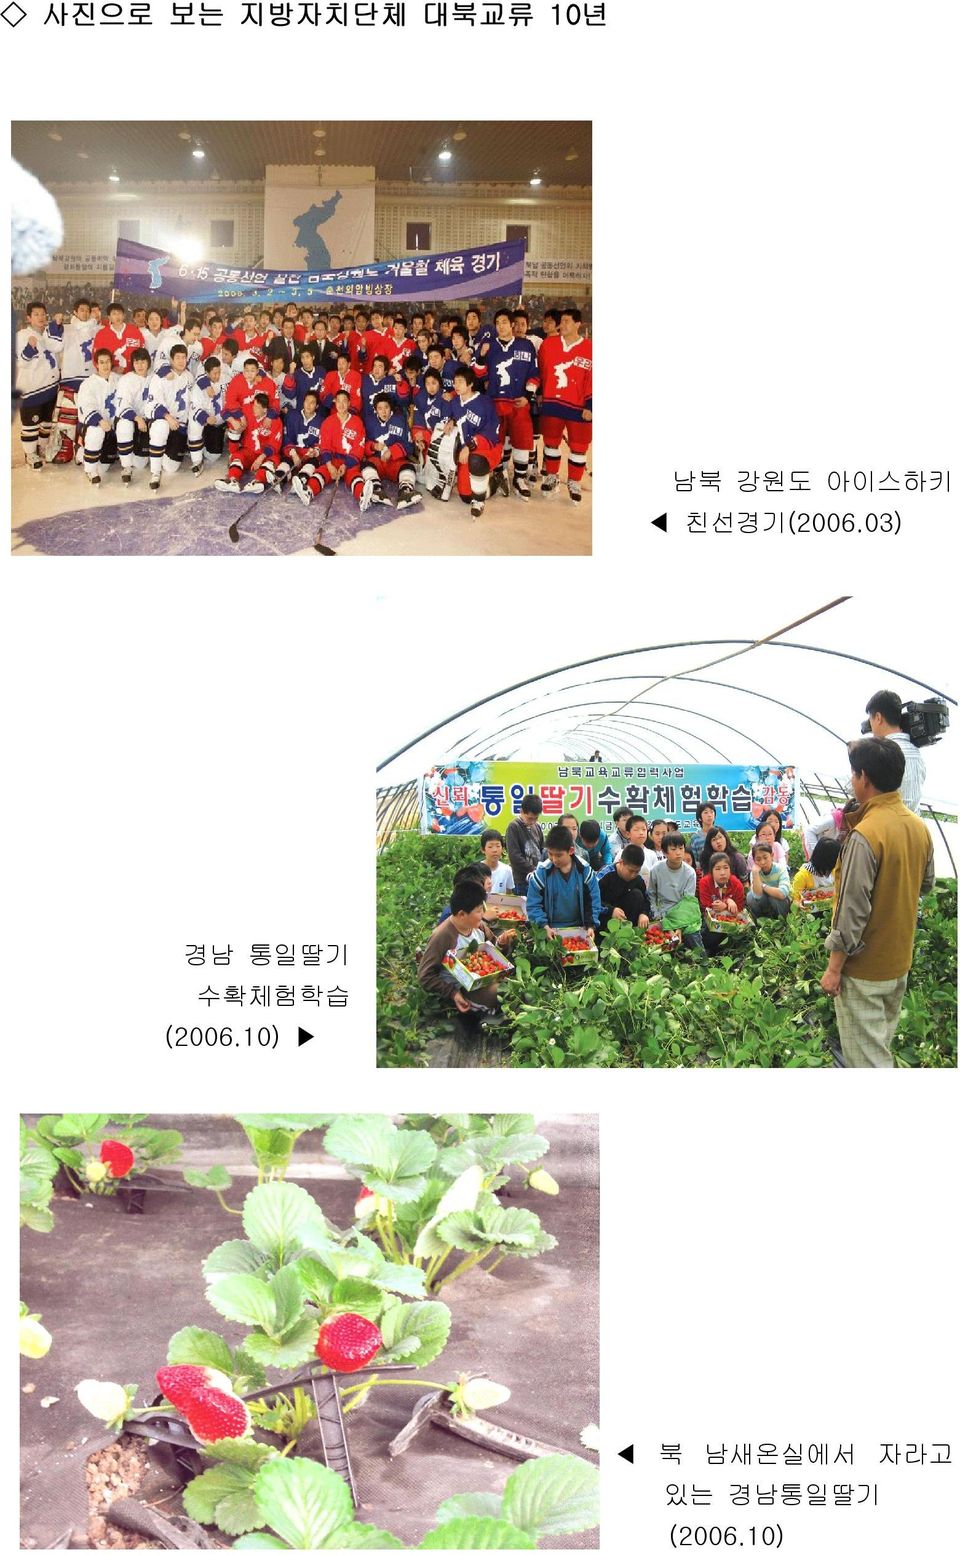 03) 경남 통일딸기 수확체험학습 (2006.